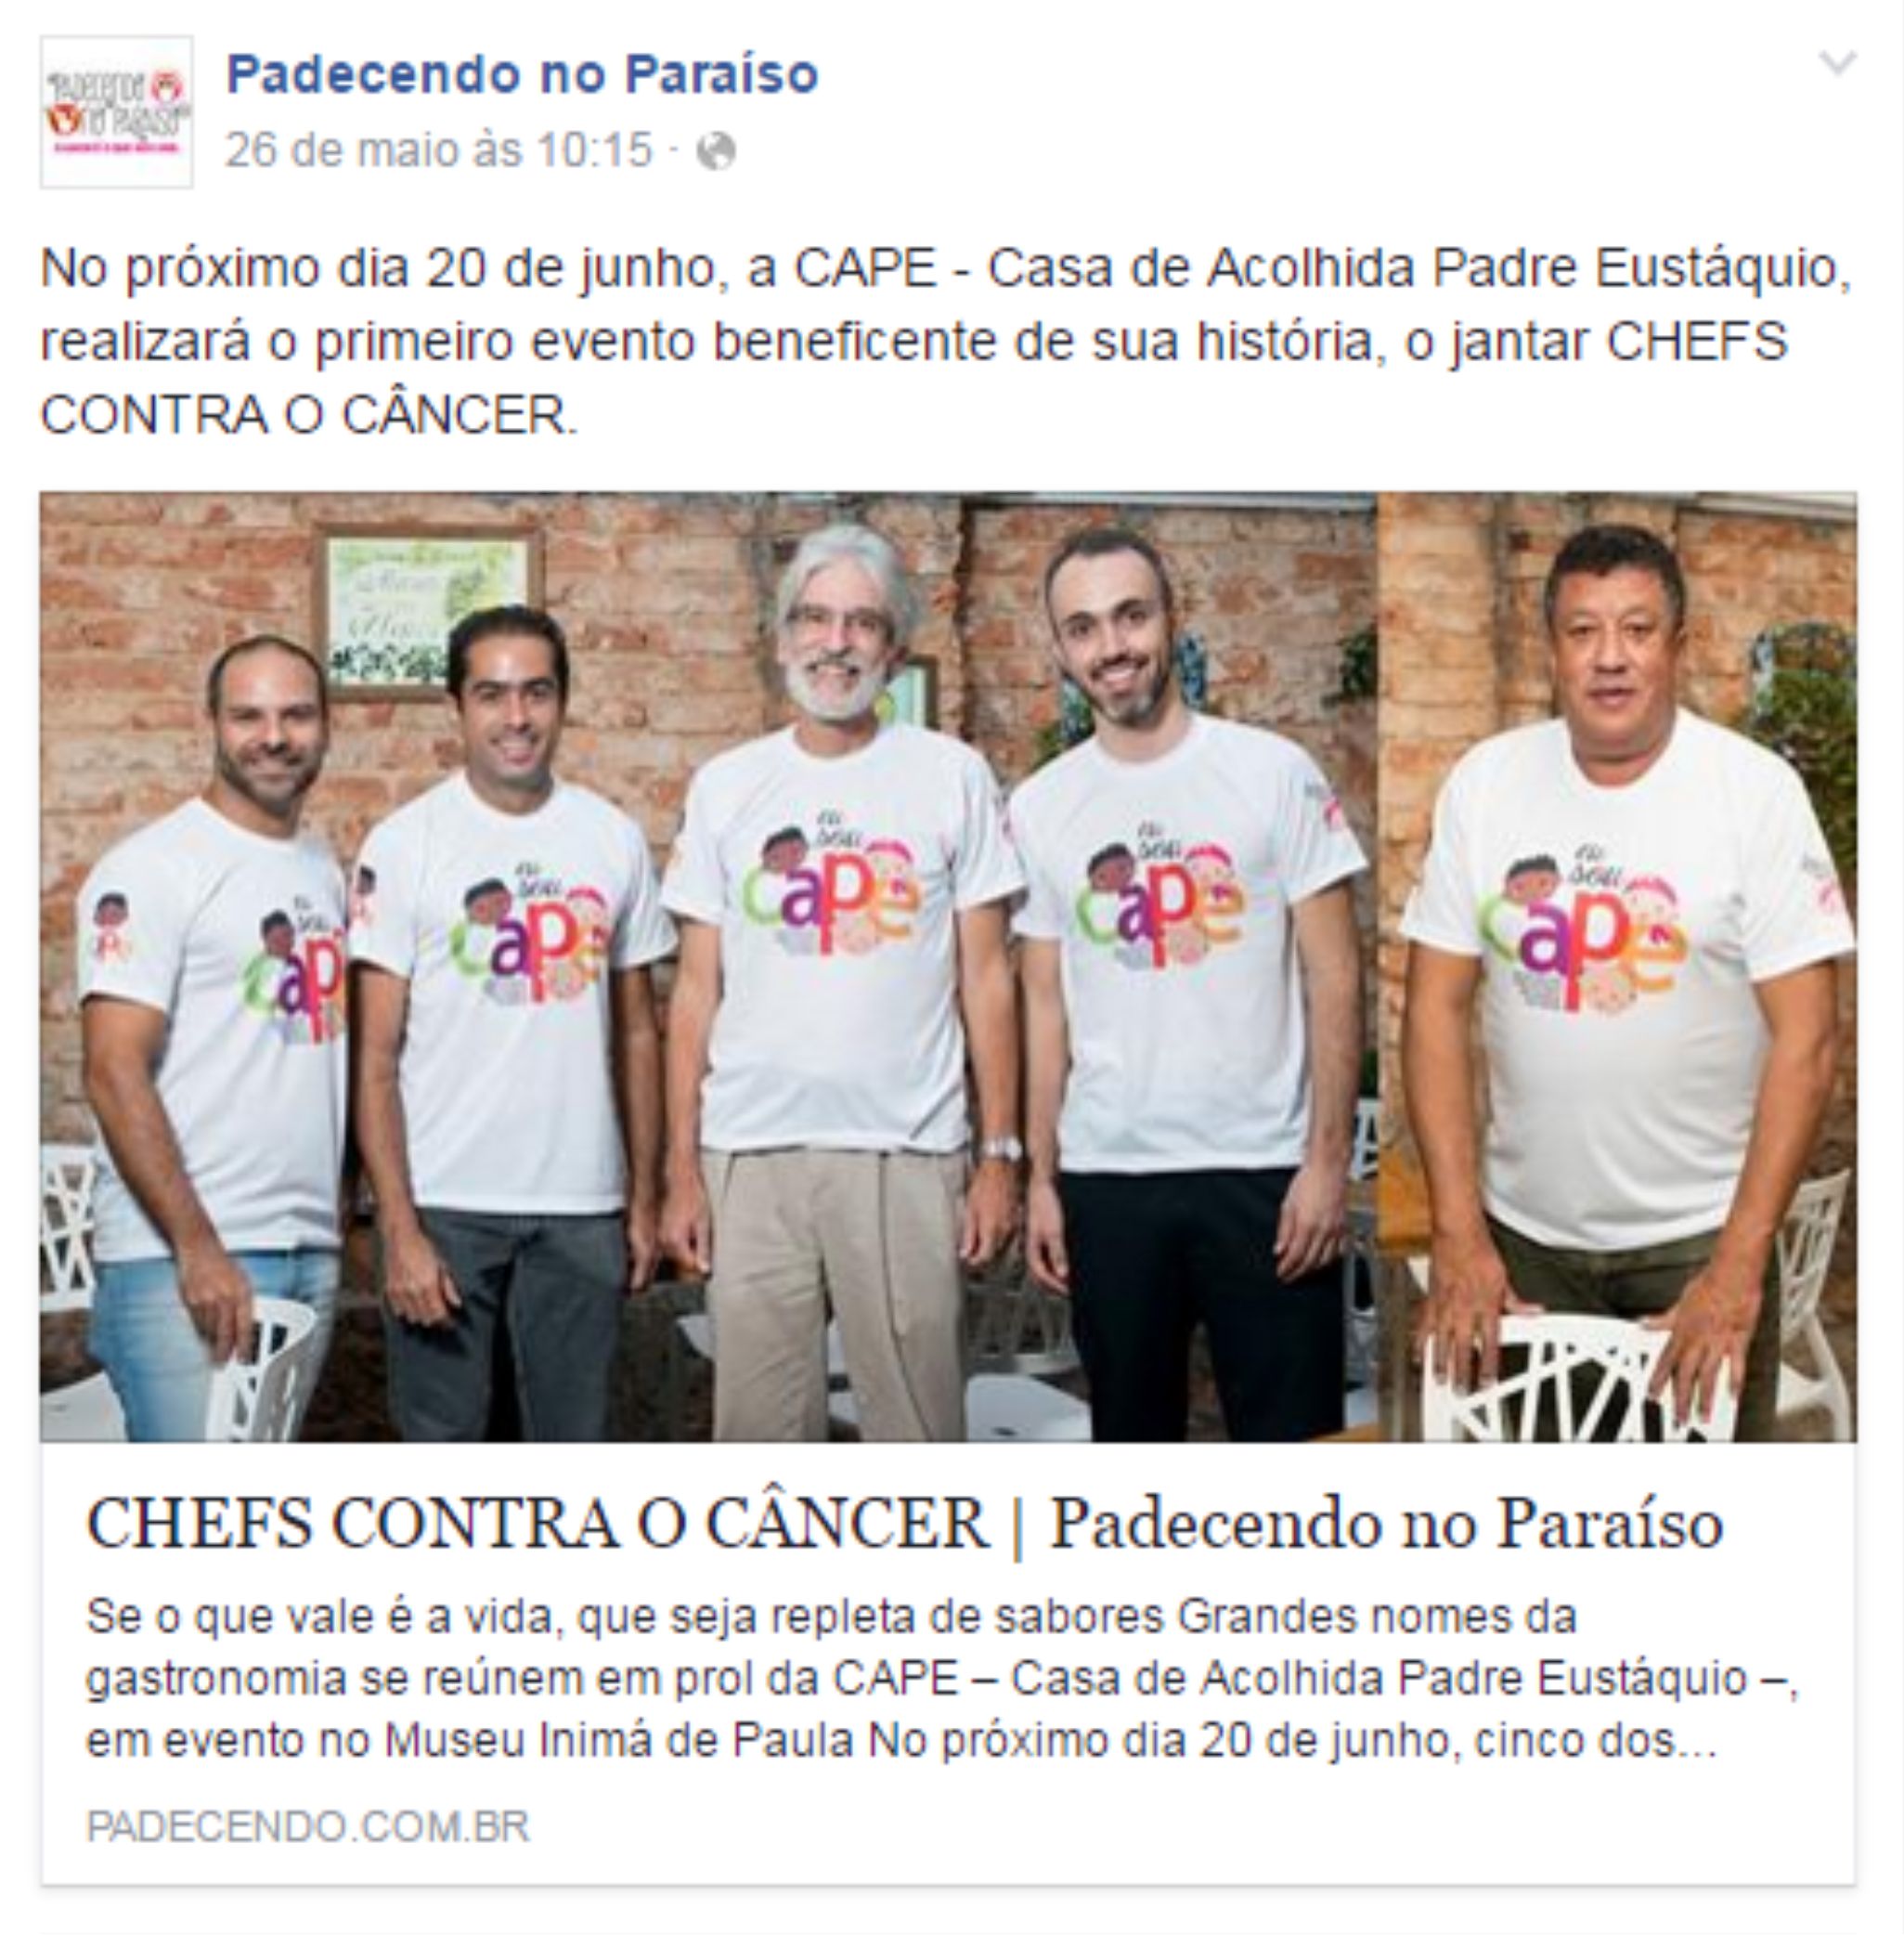 Chefs contra o câncer - CAPE